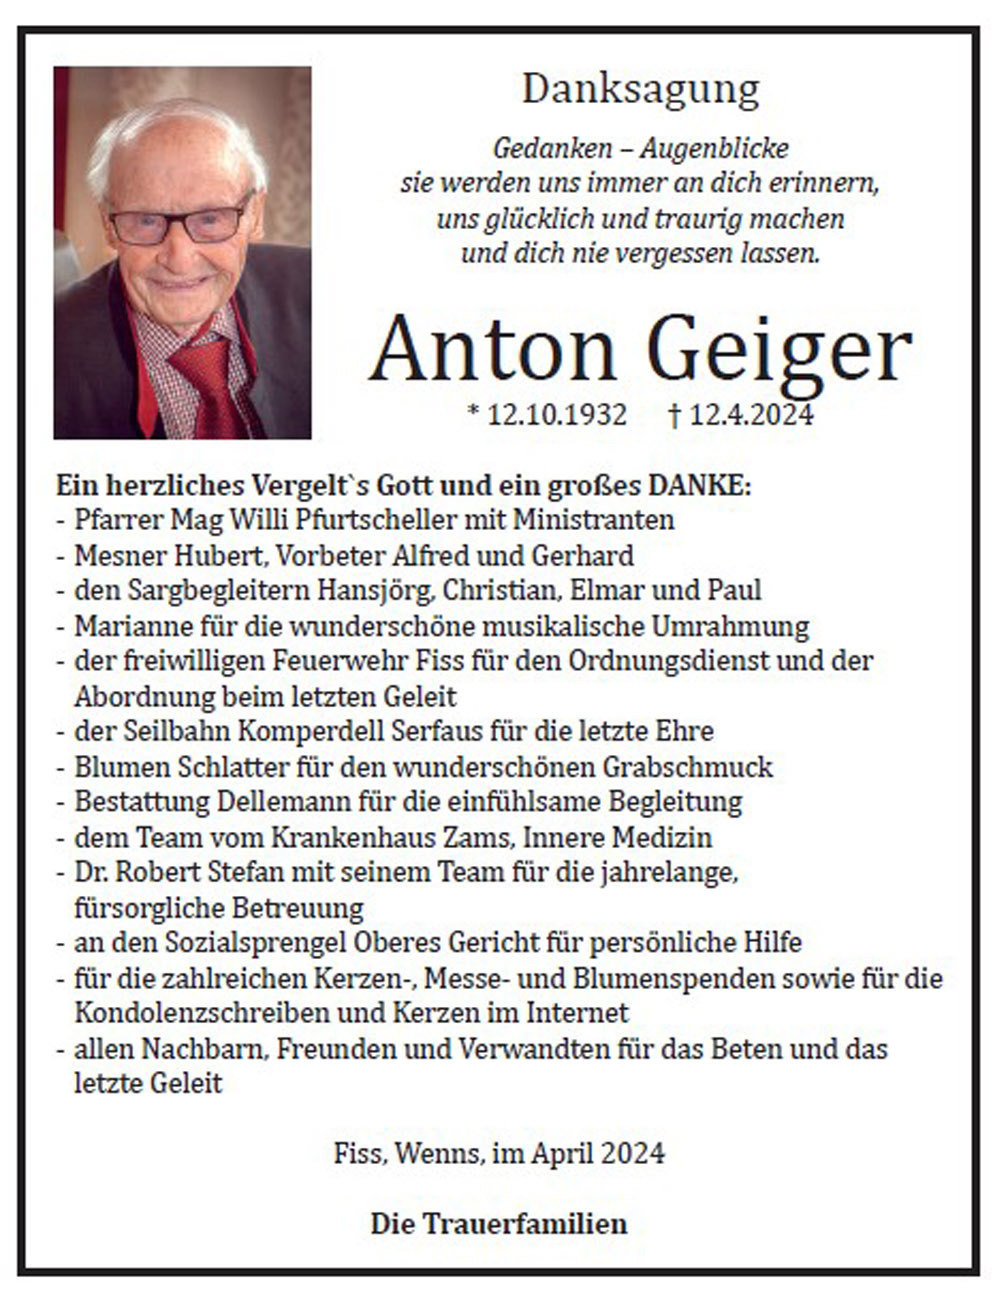 Anton Geiger 